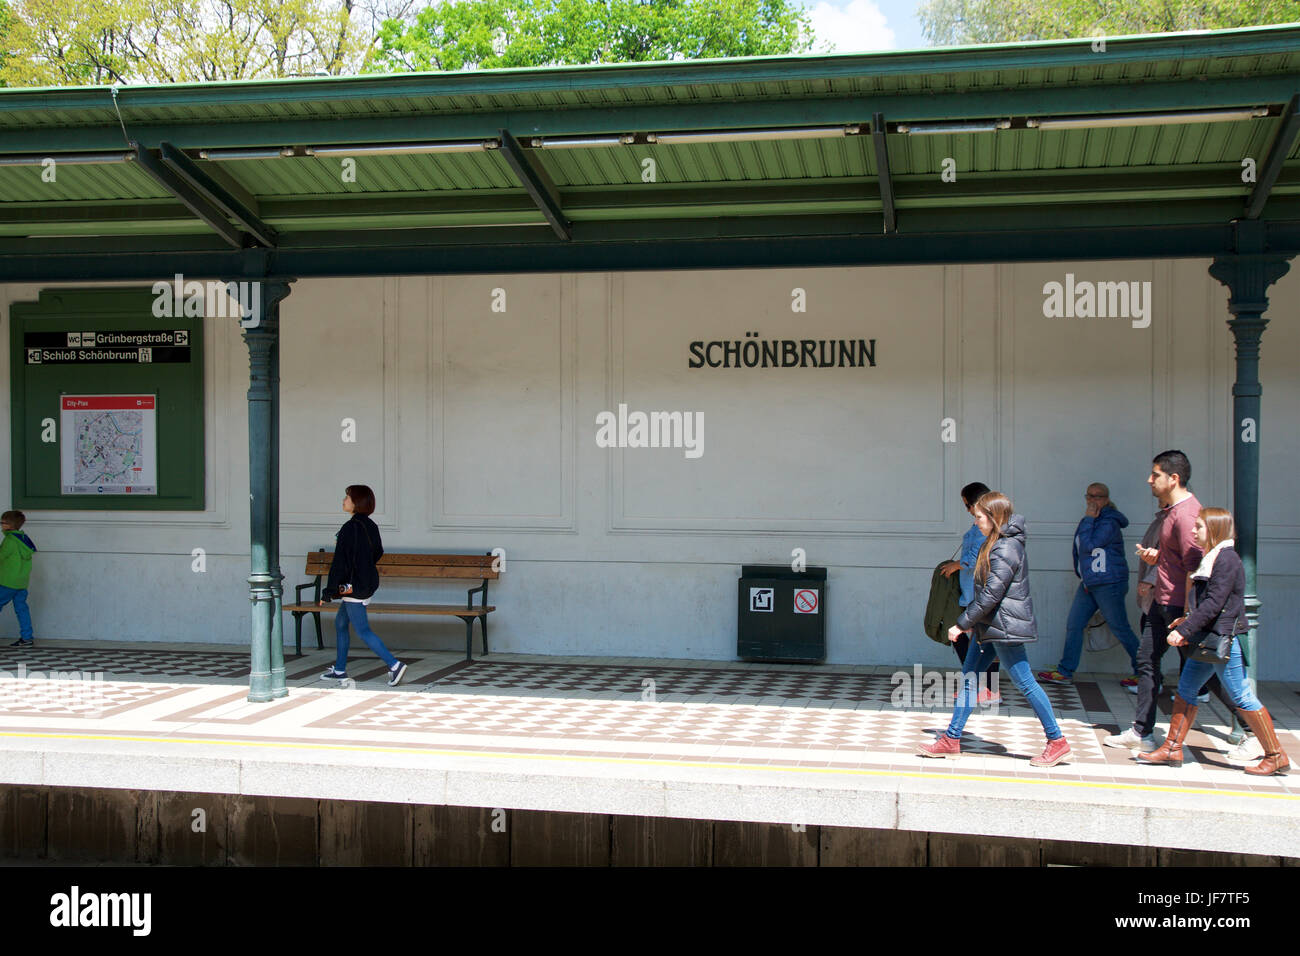 Vienne, AUTRICHE - avril 30th, 2017 : balades et les passagers en attente d'un train dans le métro ou l'arrêt de tramway Palais de Schonbrunn Banque D'Images